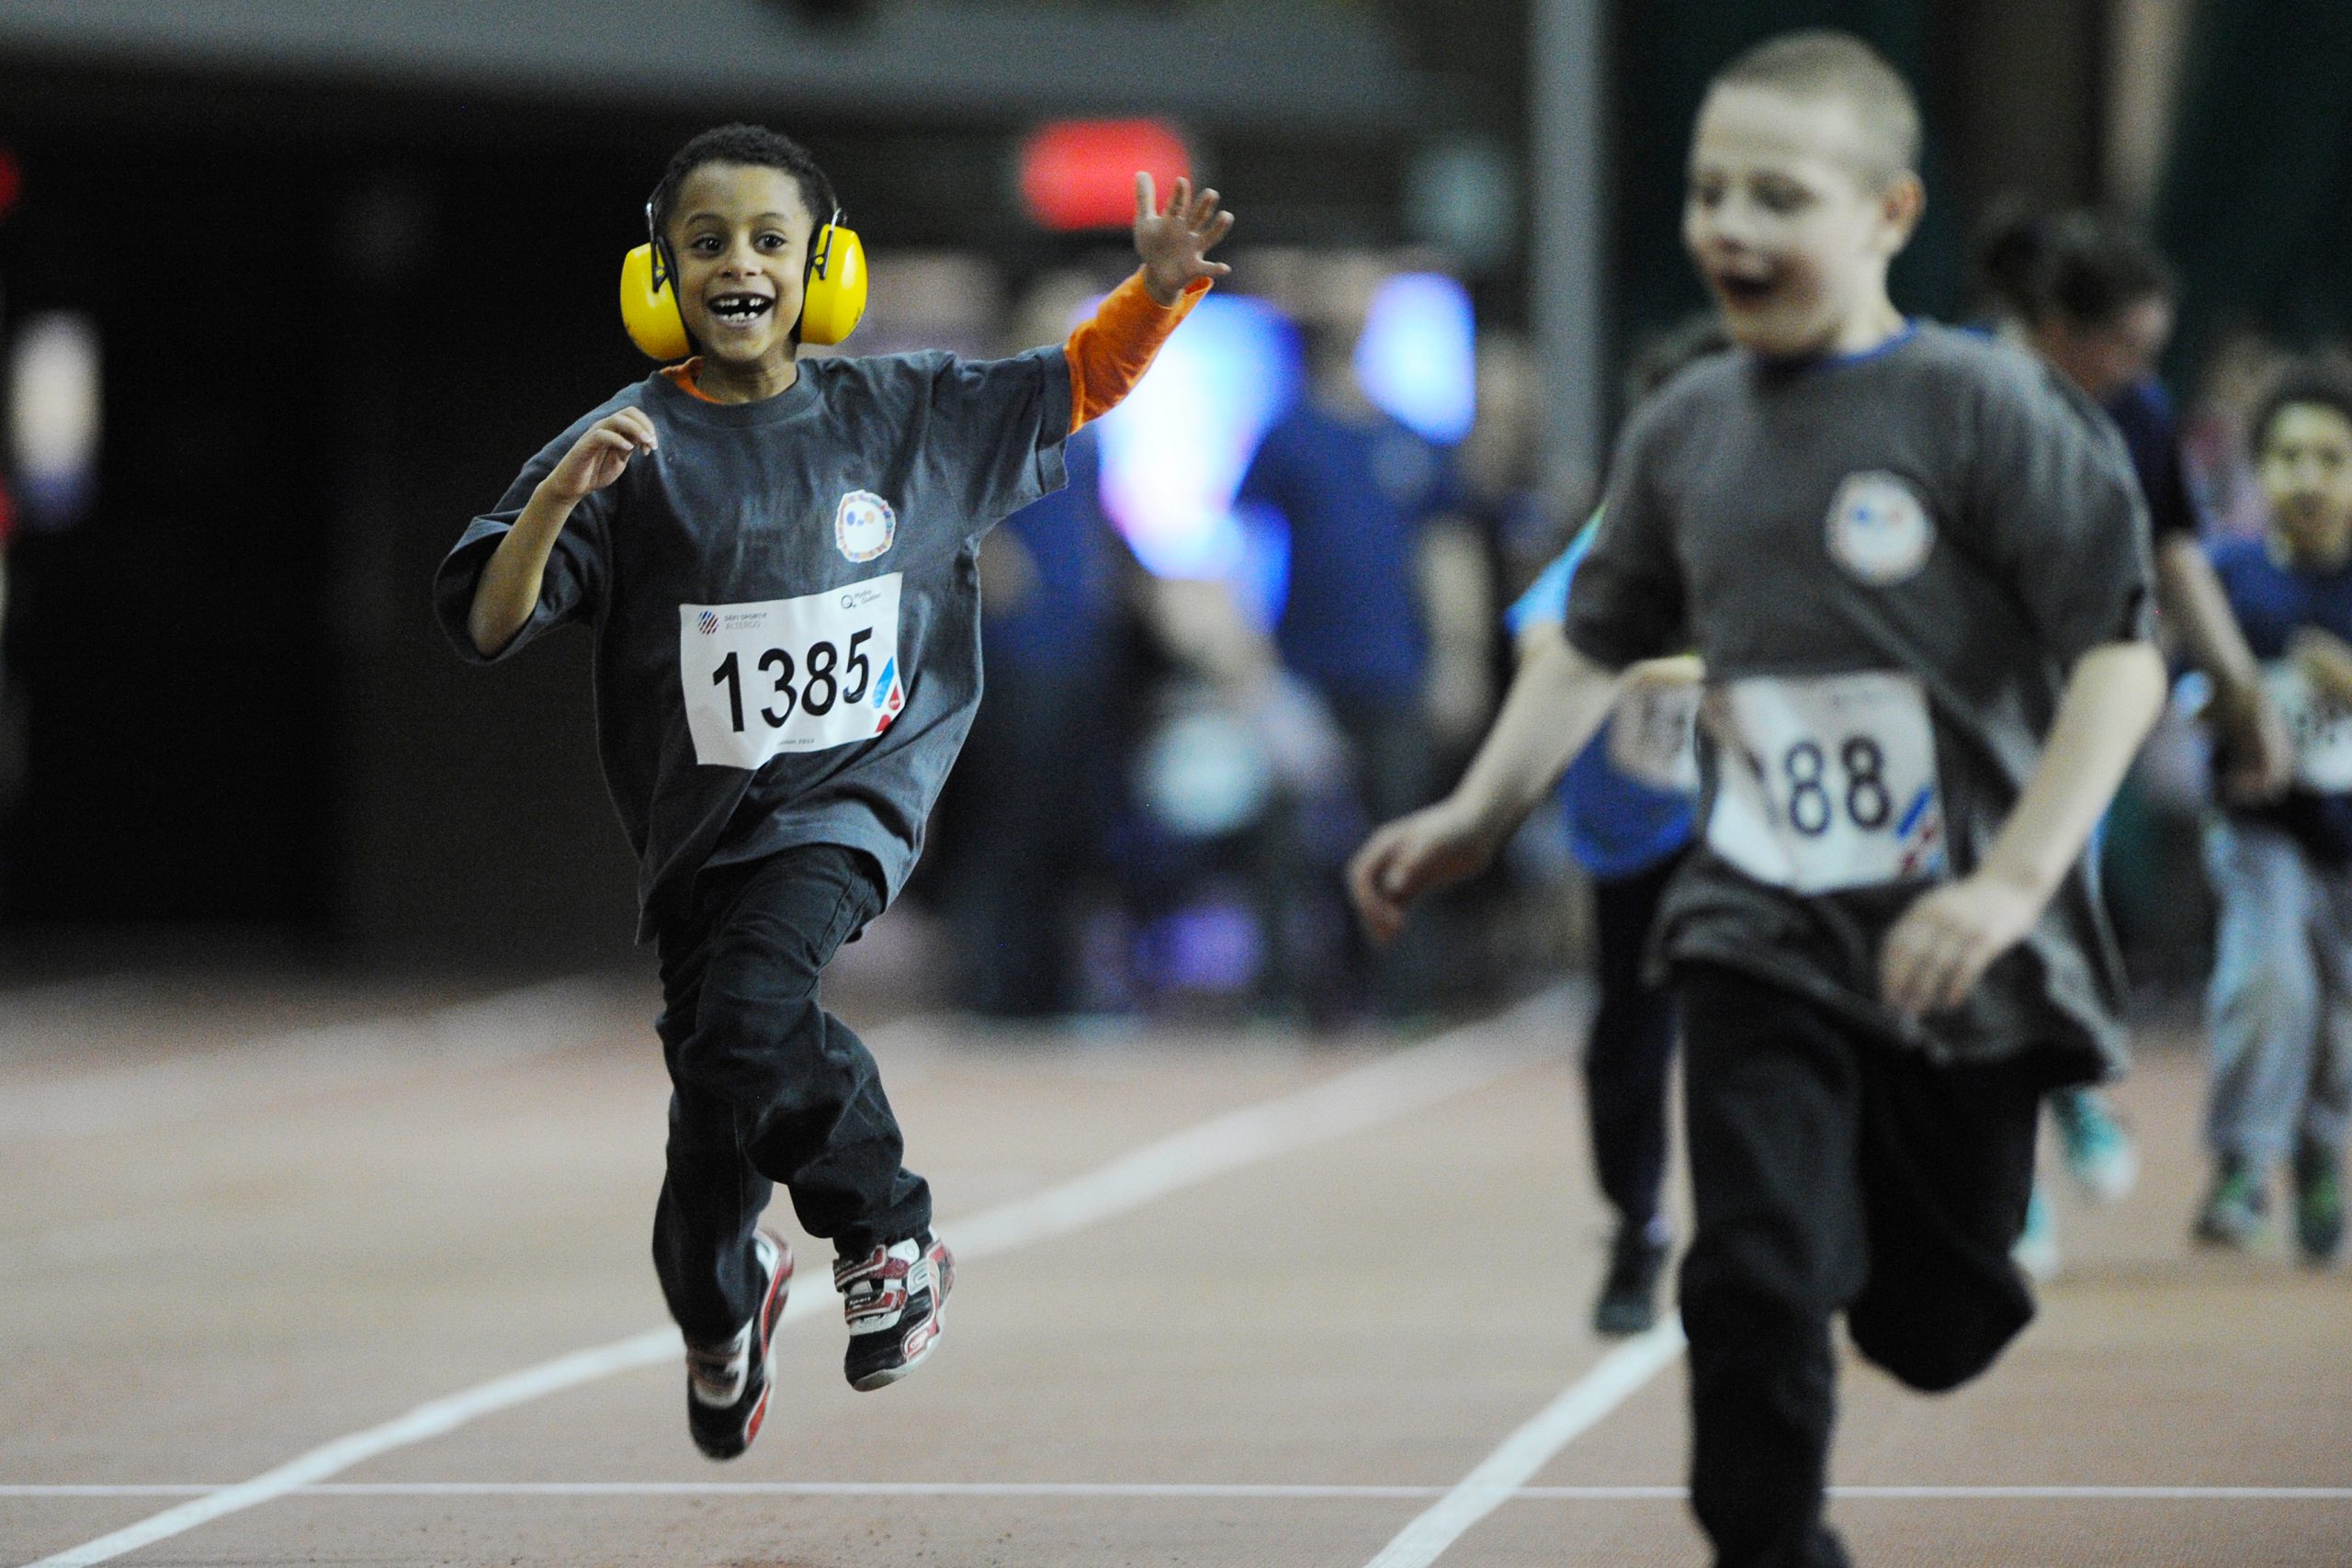 Description de l'image : Au centre, un jeune garçon portant un casque antibruit court lors d'une épreuve d'athlétisme.